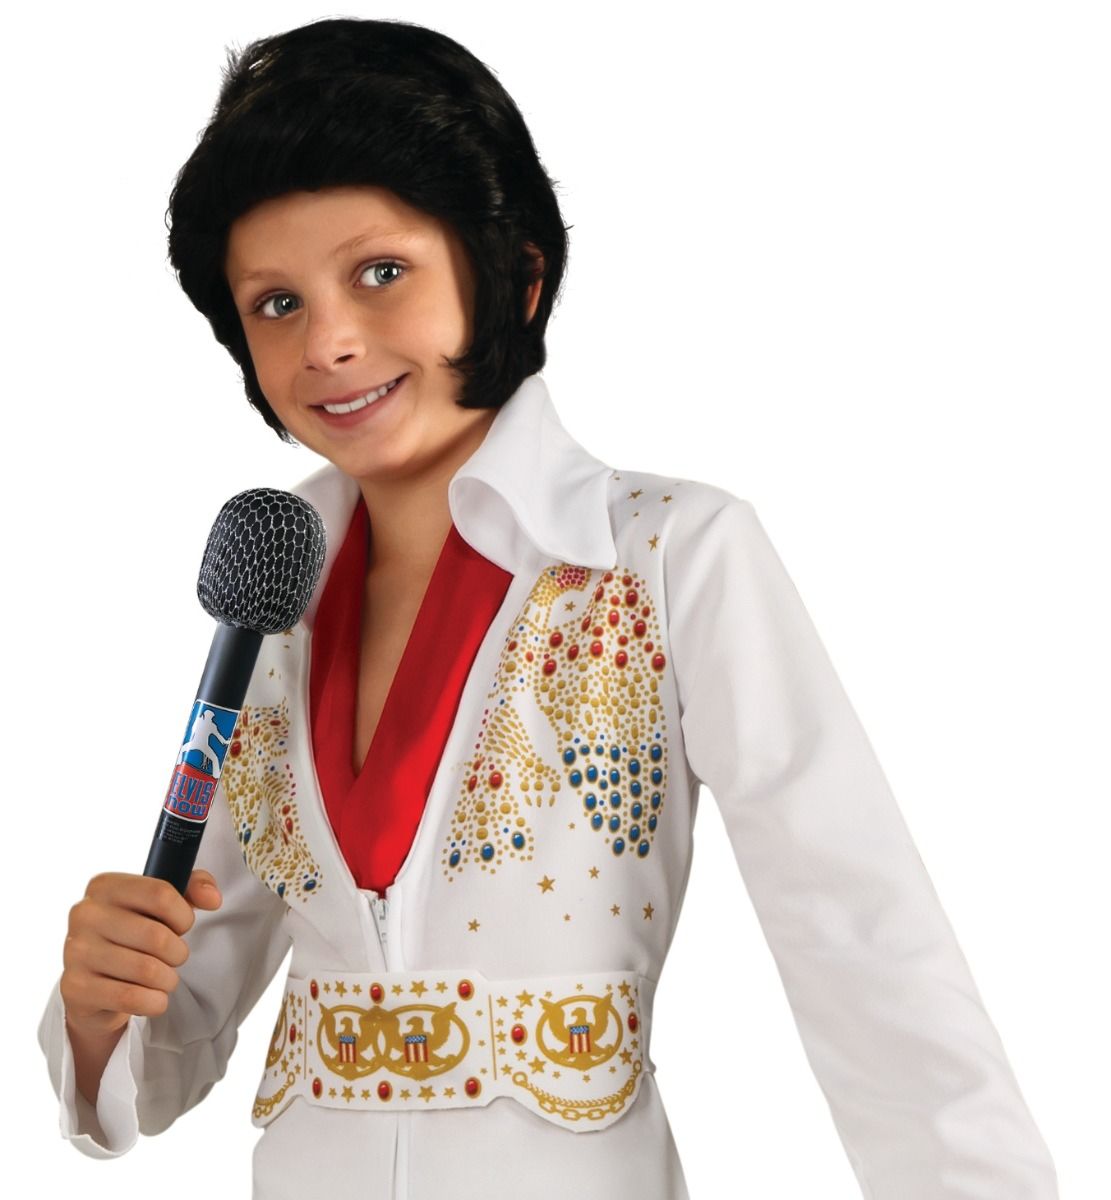 Rubie's COSTUMES: ACCESSORIES Elvis Presley Microphone